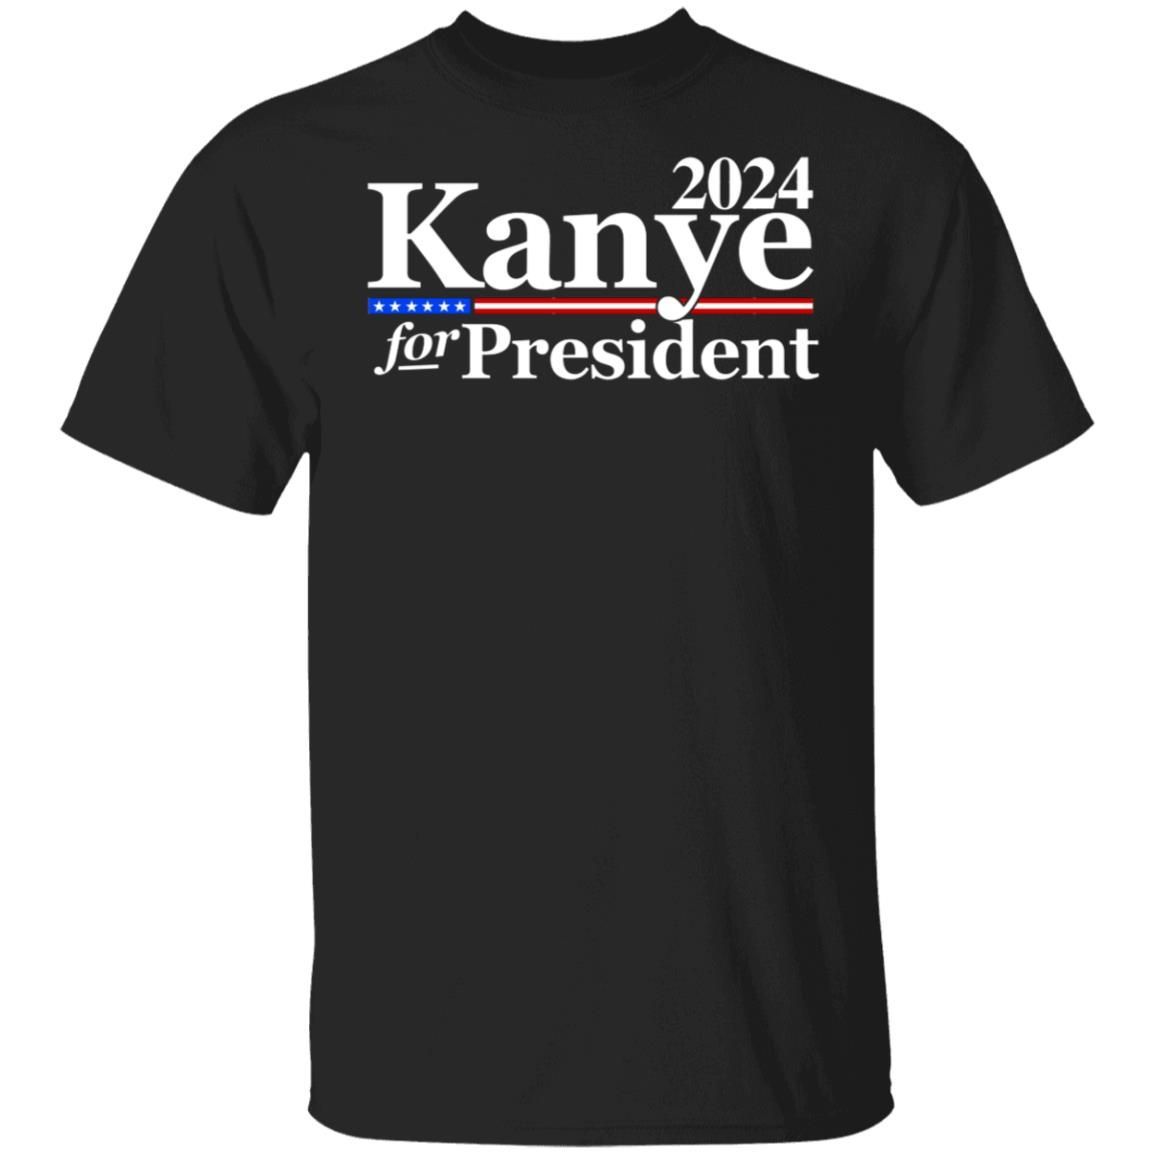 Kanye for President 2024 Shirt EmprintsTOP